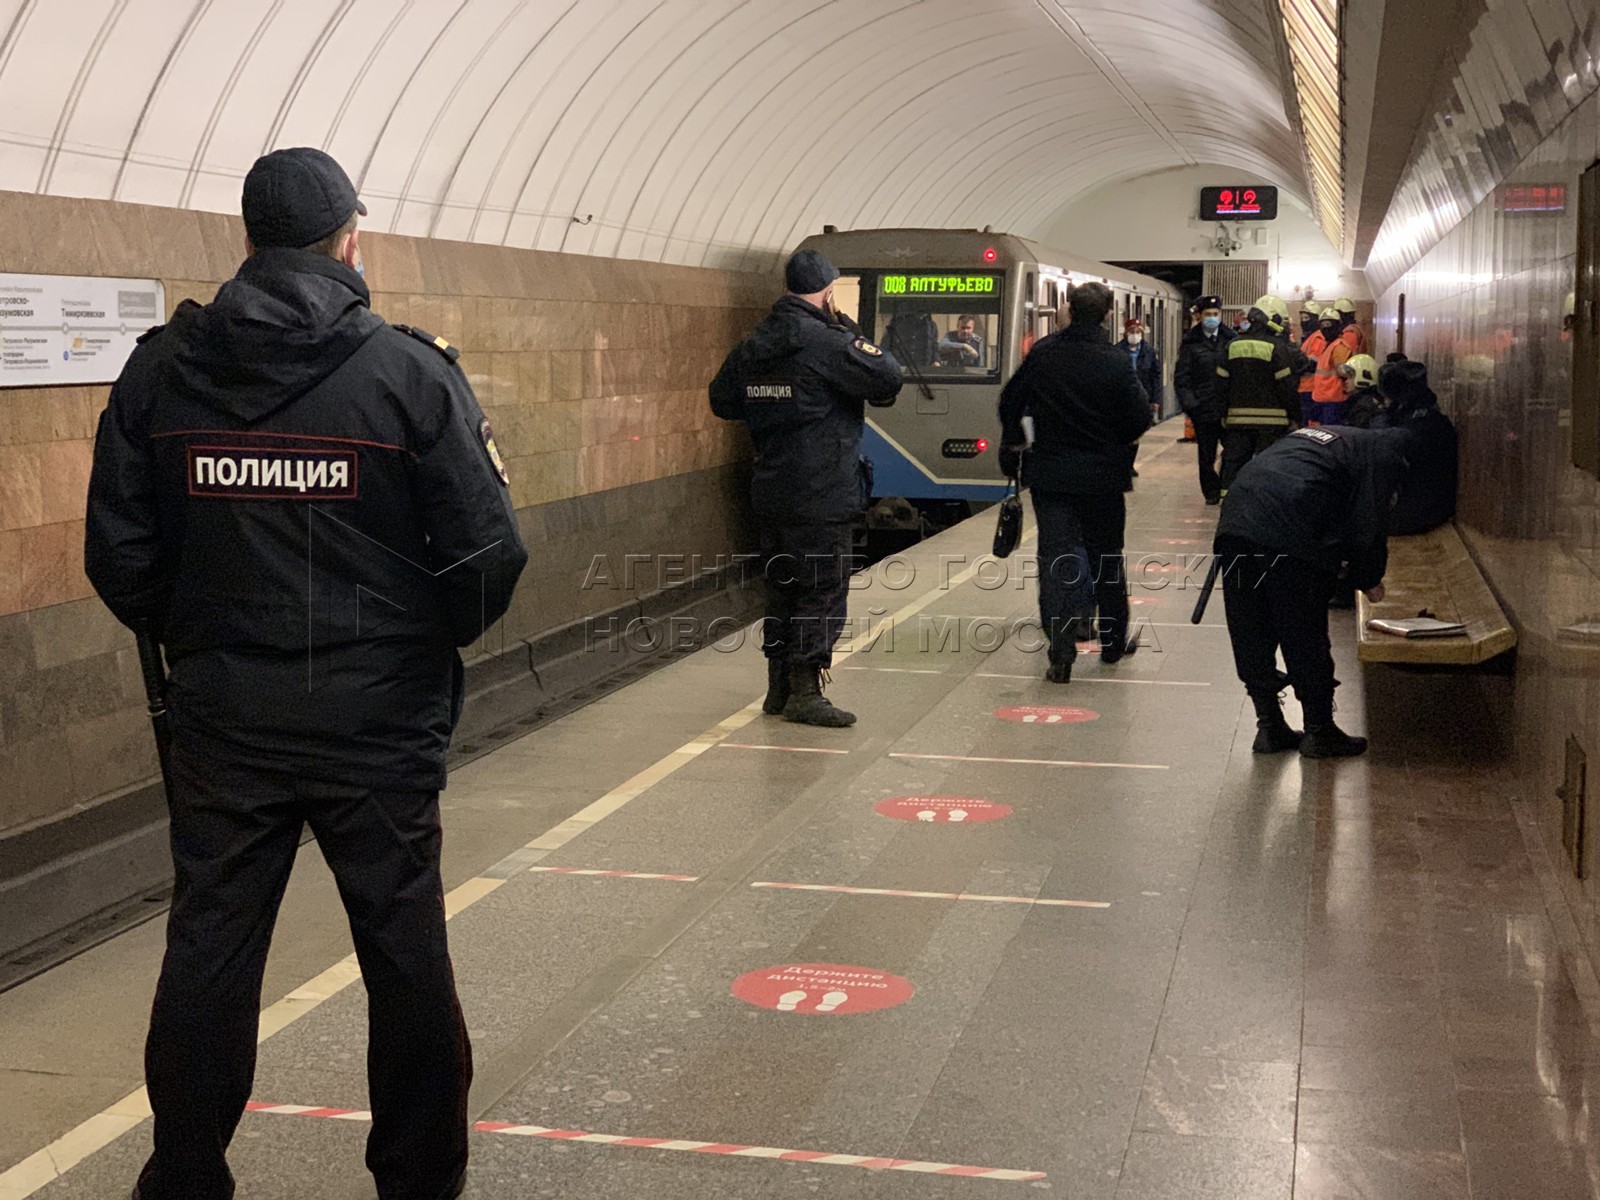 Метро савеловская что случилось. В Москве упал человек на рельсы метро. Люди на станции метро.